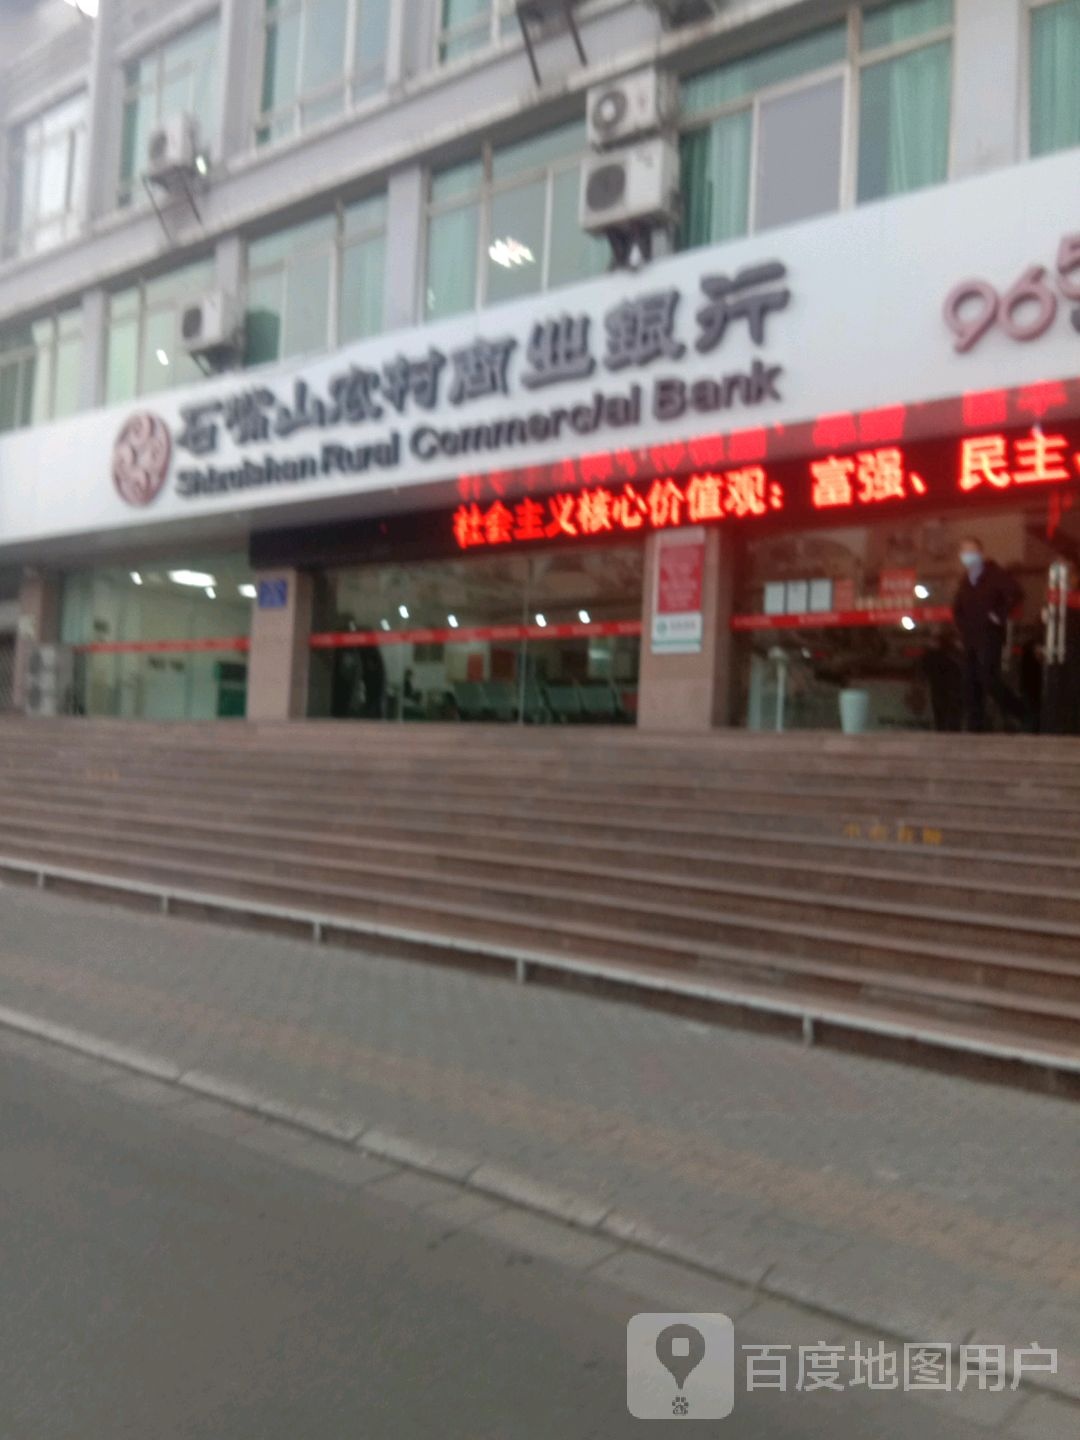 石嘴山农村商业银行(前进北路)